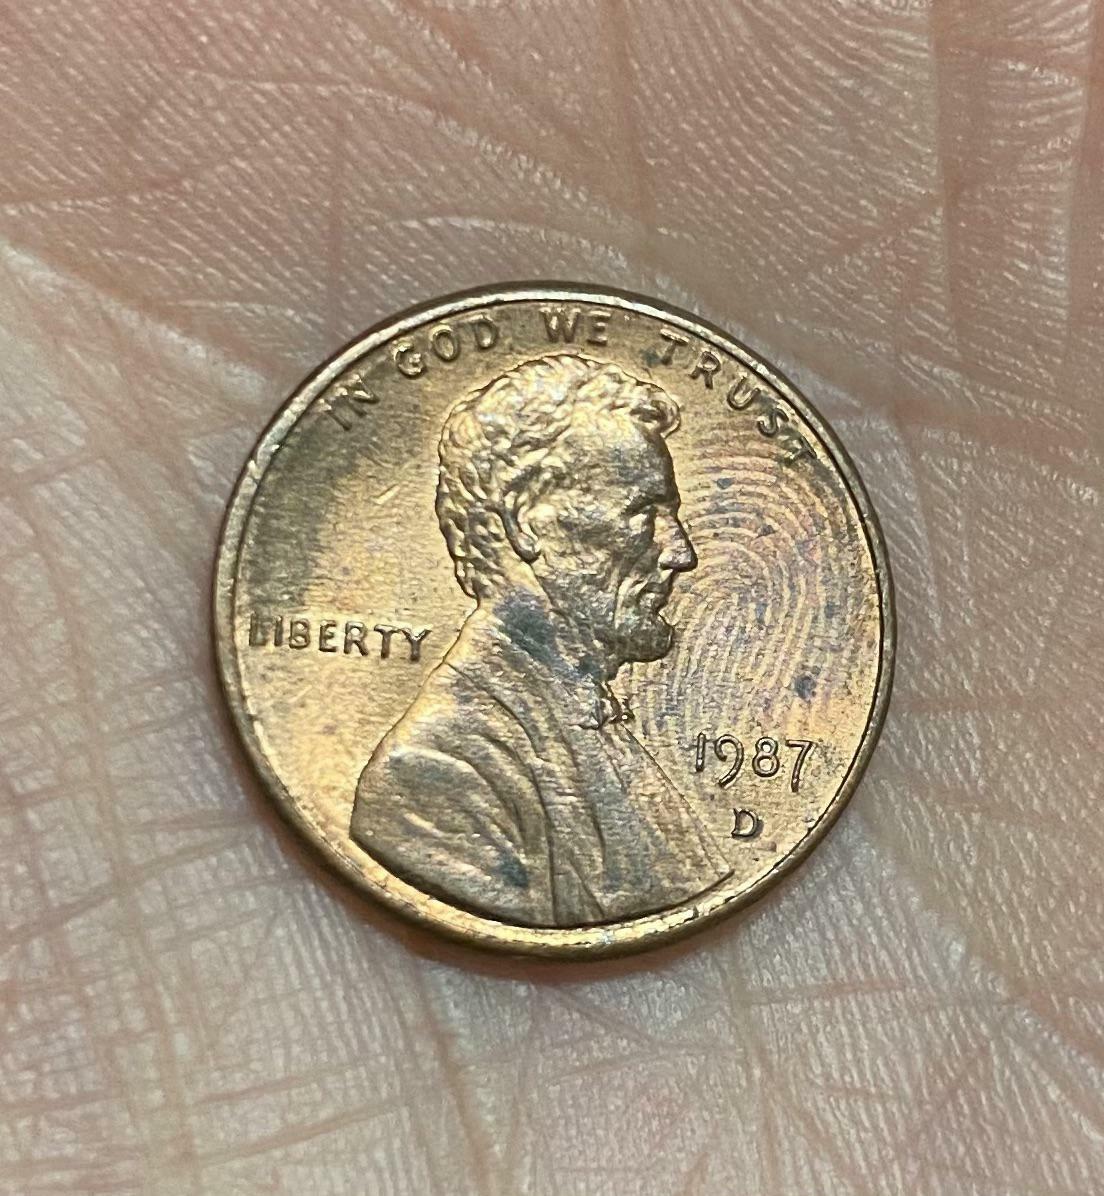 pourquoi y a-t-il une empreinte digitale sur ce penny ? elle est incrustée et est usée de façon notable dans cette zone